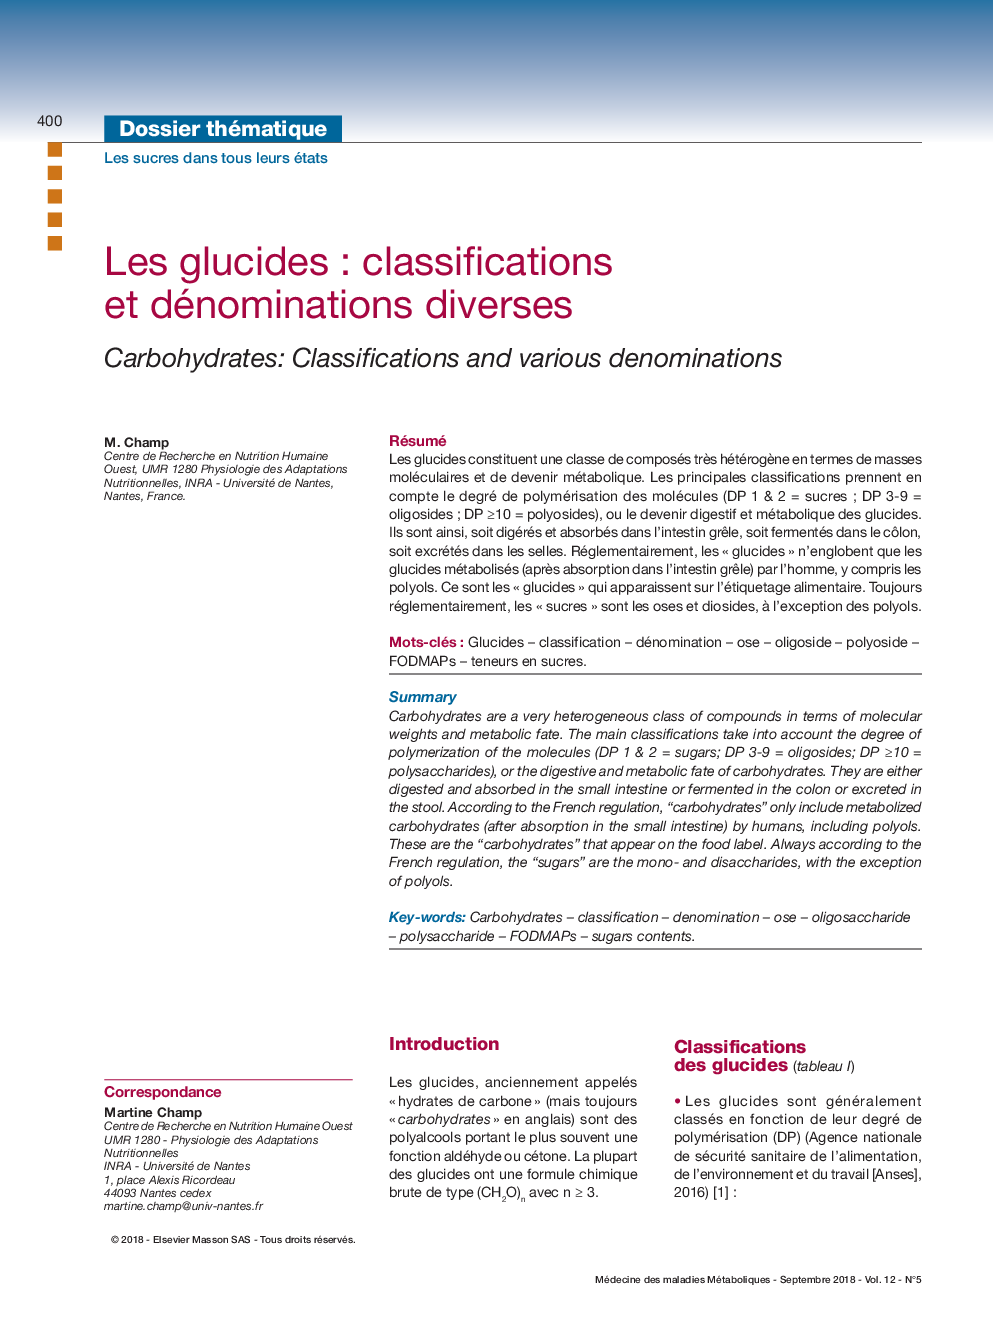 Les glucides: classifications et dénominations diverses